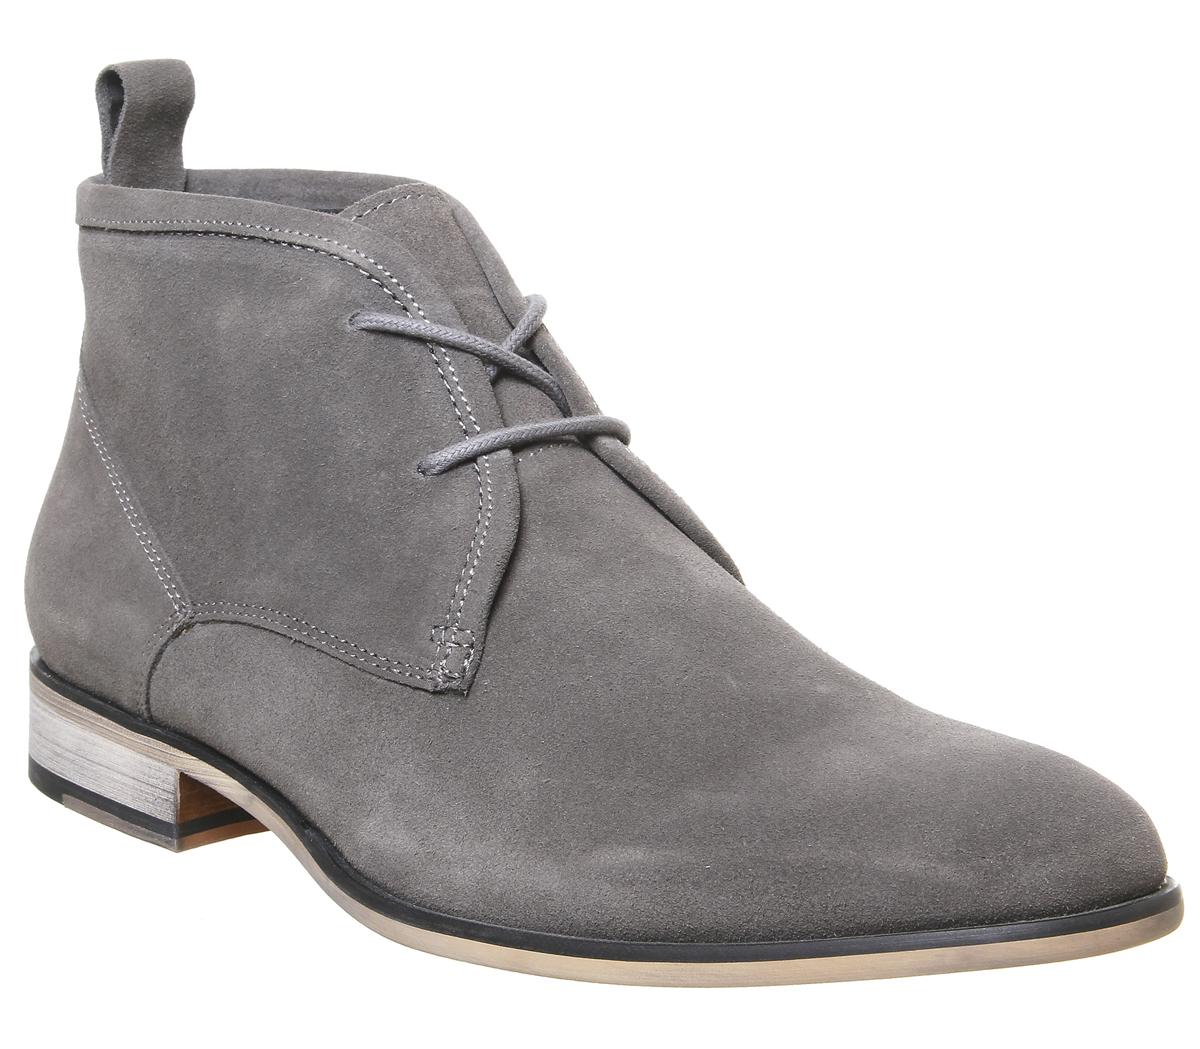 grey chukka boots